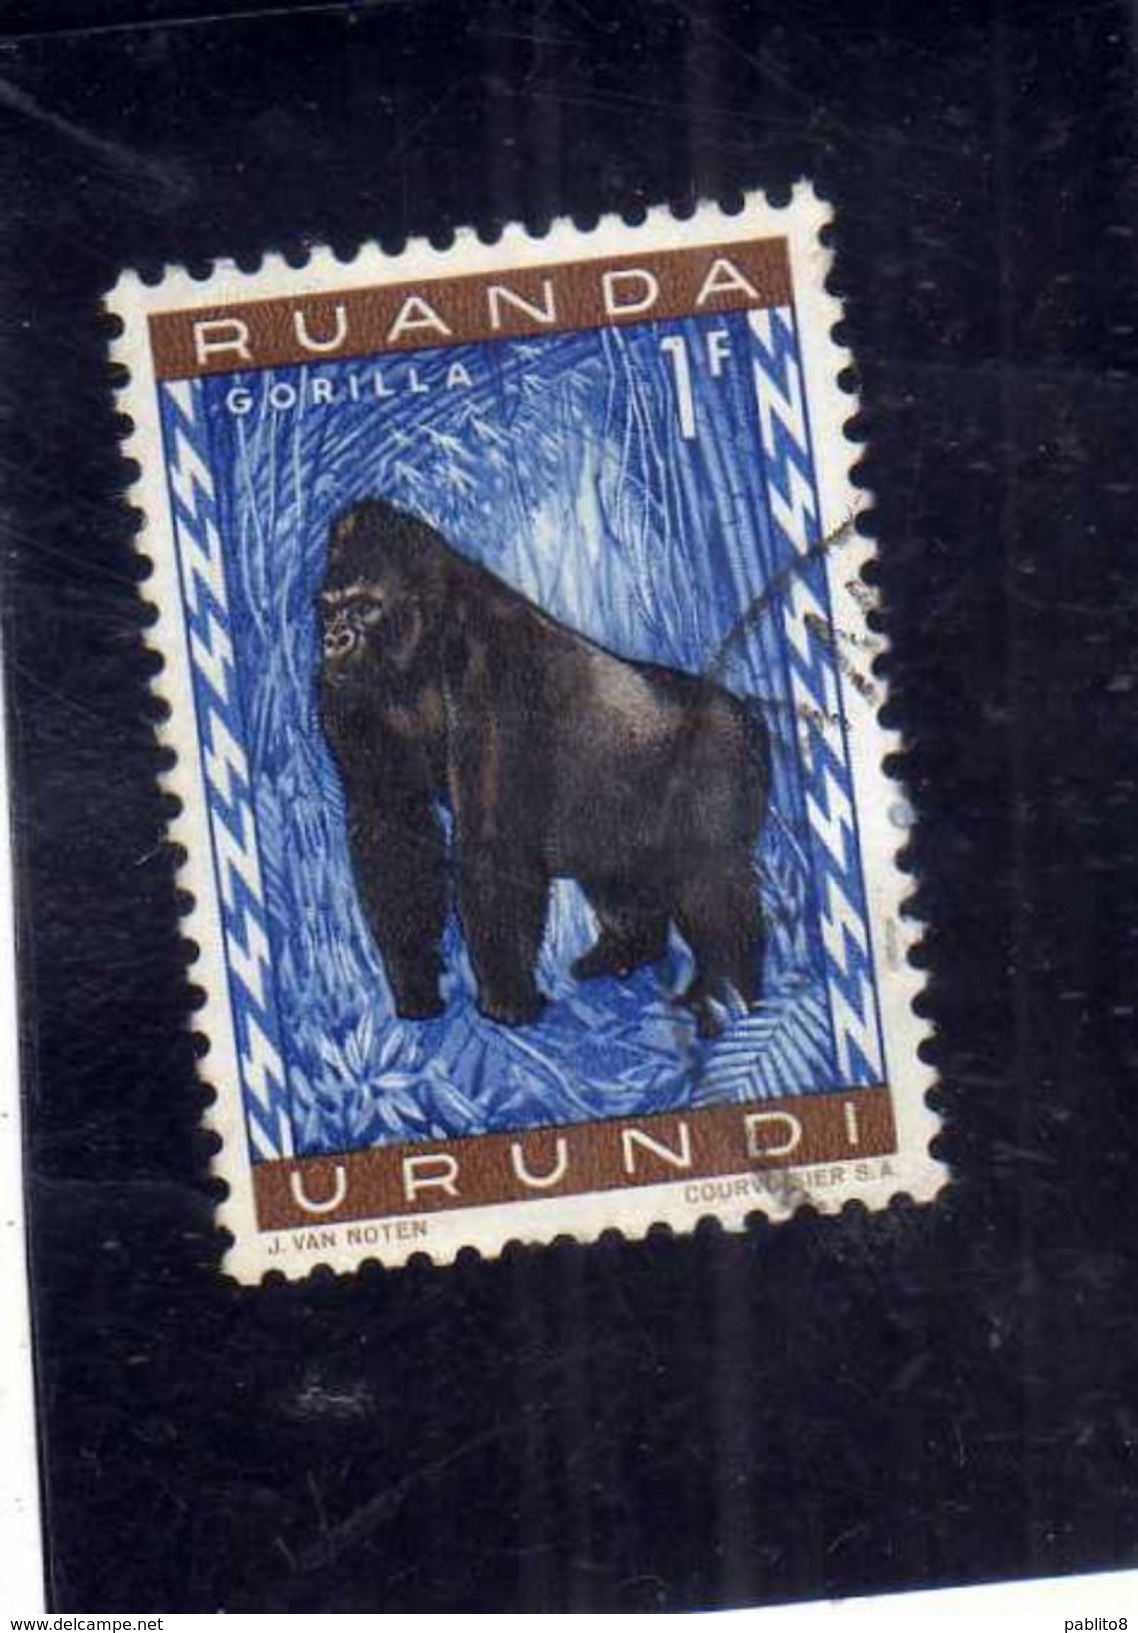 RUANDA URUNDI 1959 1961 FAUNA GORILLA ANIMALS SCIMPANZE' ANIMALI 1F USATO USED OBLITERE' - Nuovi